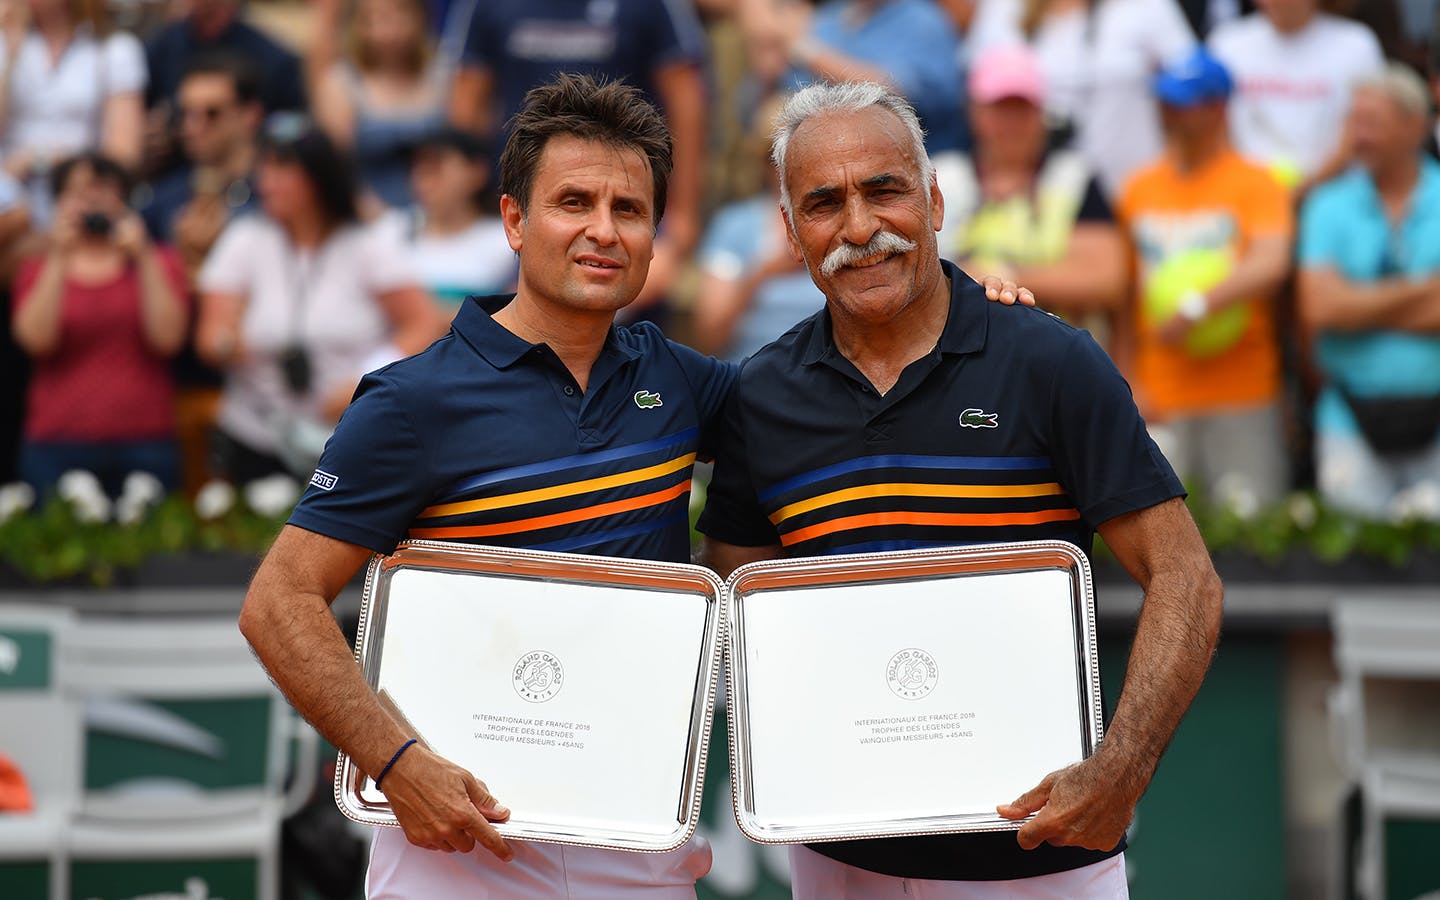 Légendes plus de 45 ans, Fabrice Santoro et Mansour Bahrami, Roland-Garros 2018
